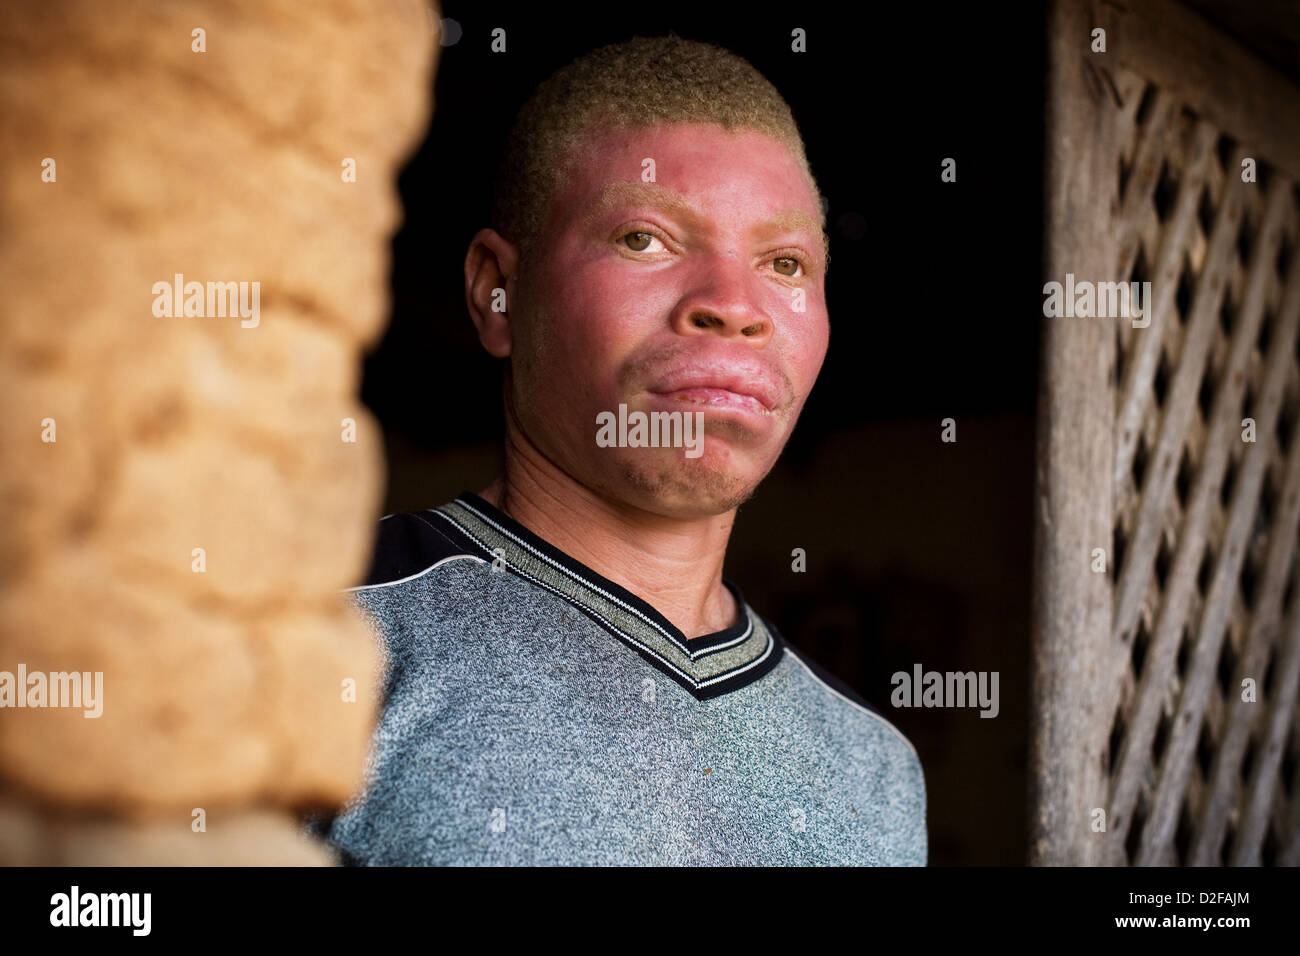 Hombre albino africano con quemaduras en su rostro. Foto de stock